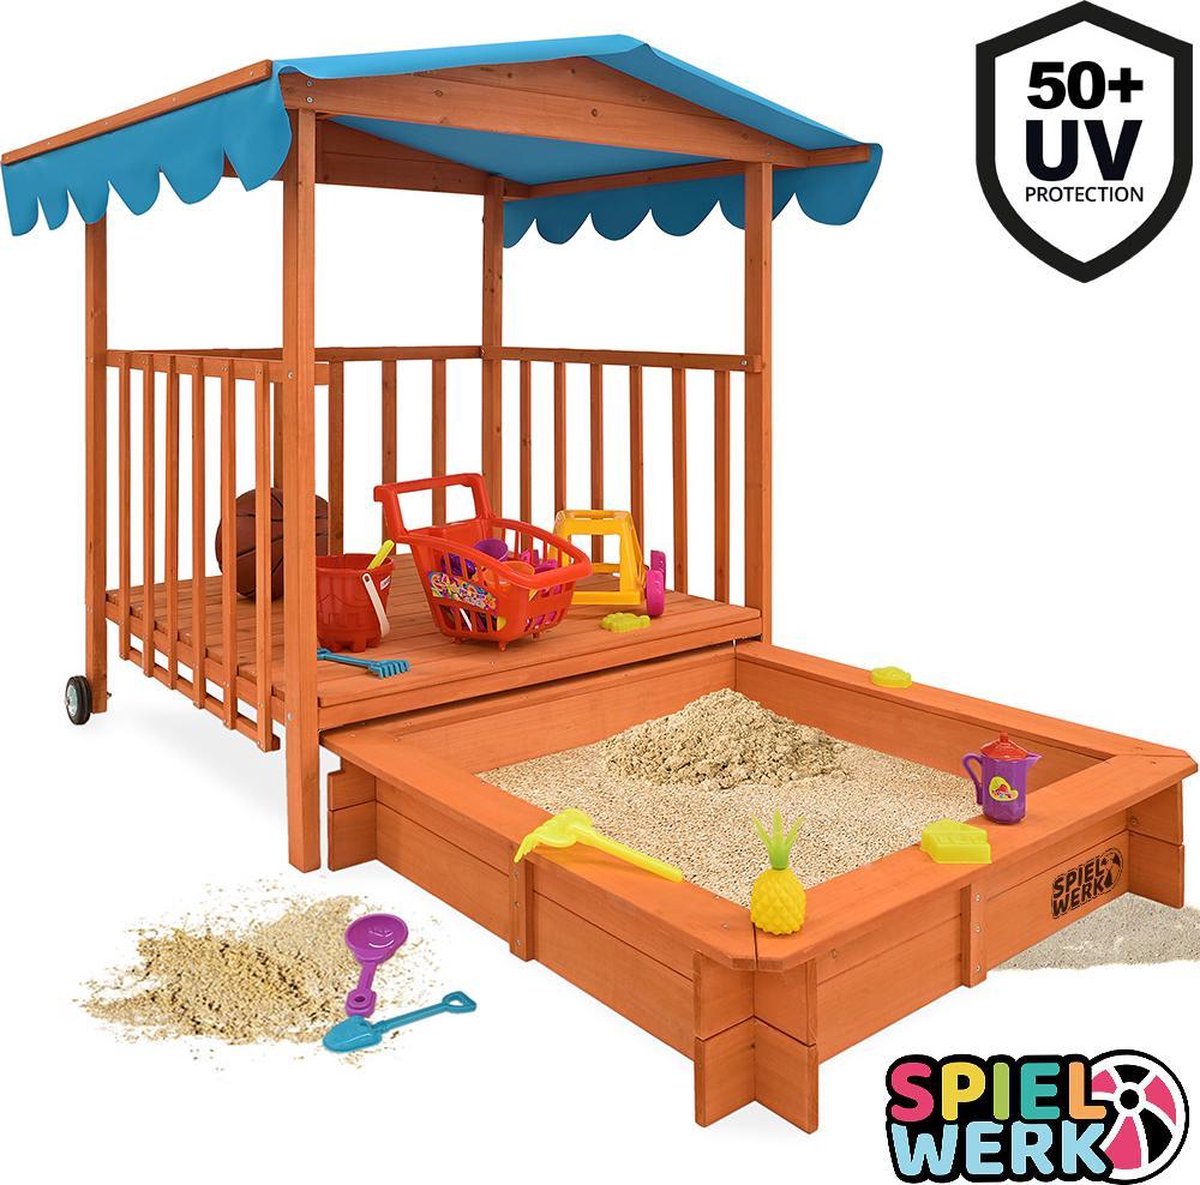 Spielwerk Zandbak met speelhuis en zwenkwielen - 130x130x143 cm - UV 50